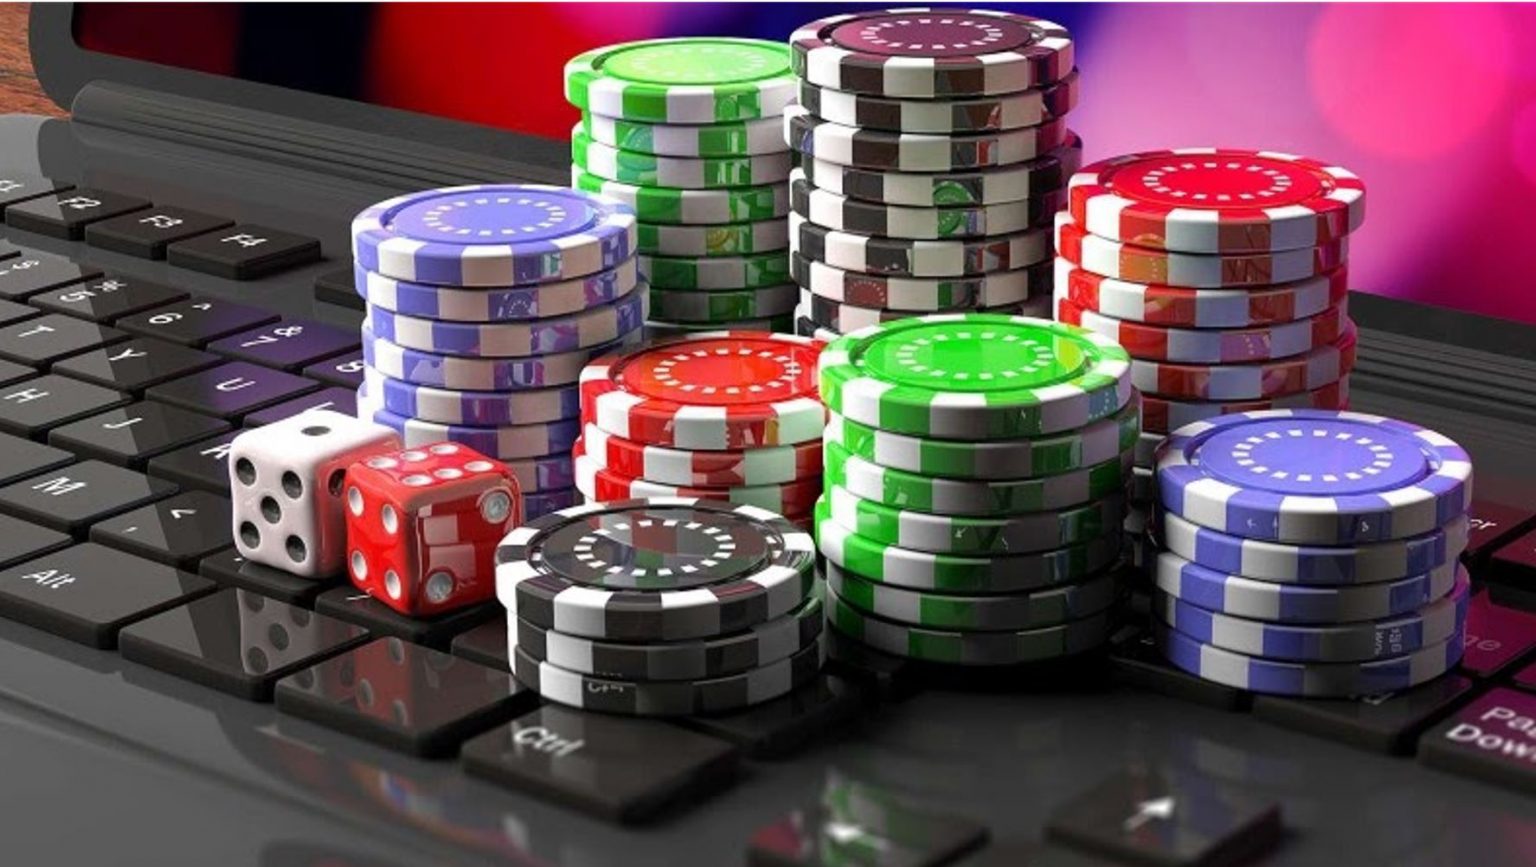 true fortune casino no deposit bonus 2022